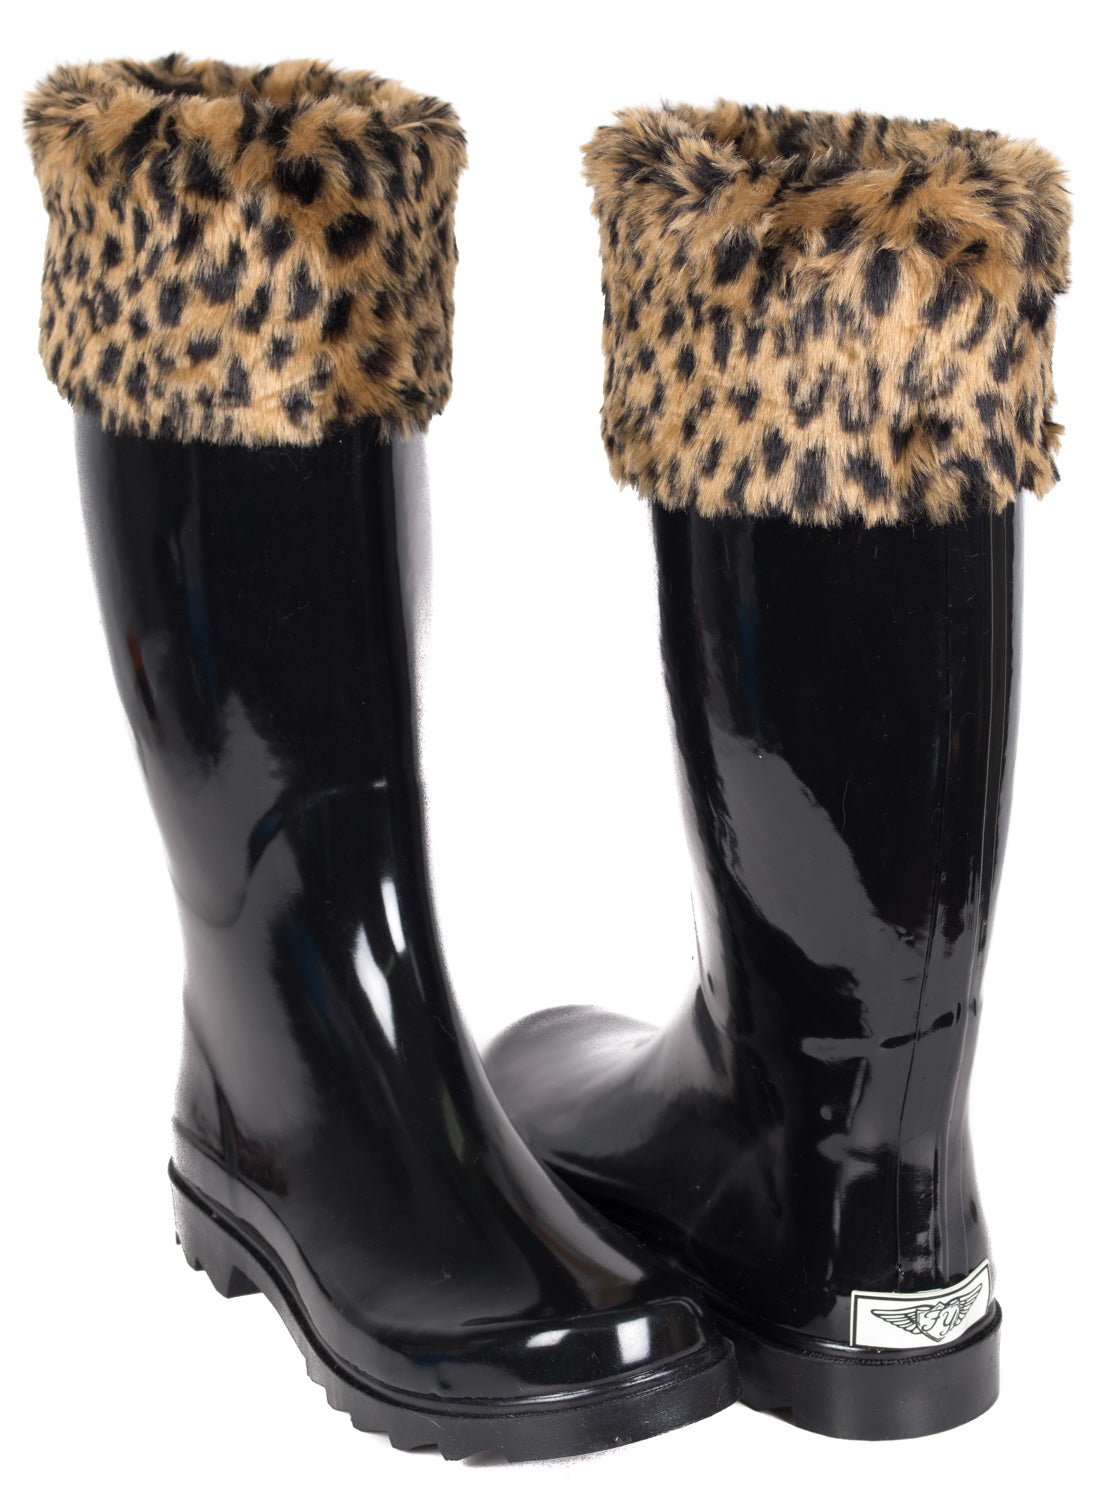 rain boots leopard print